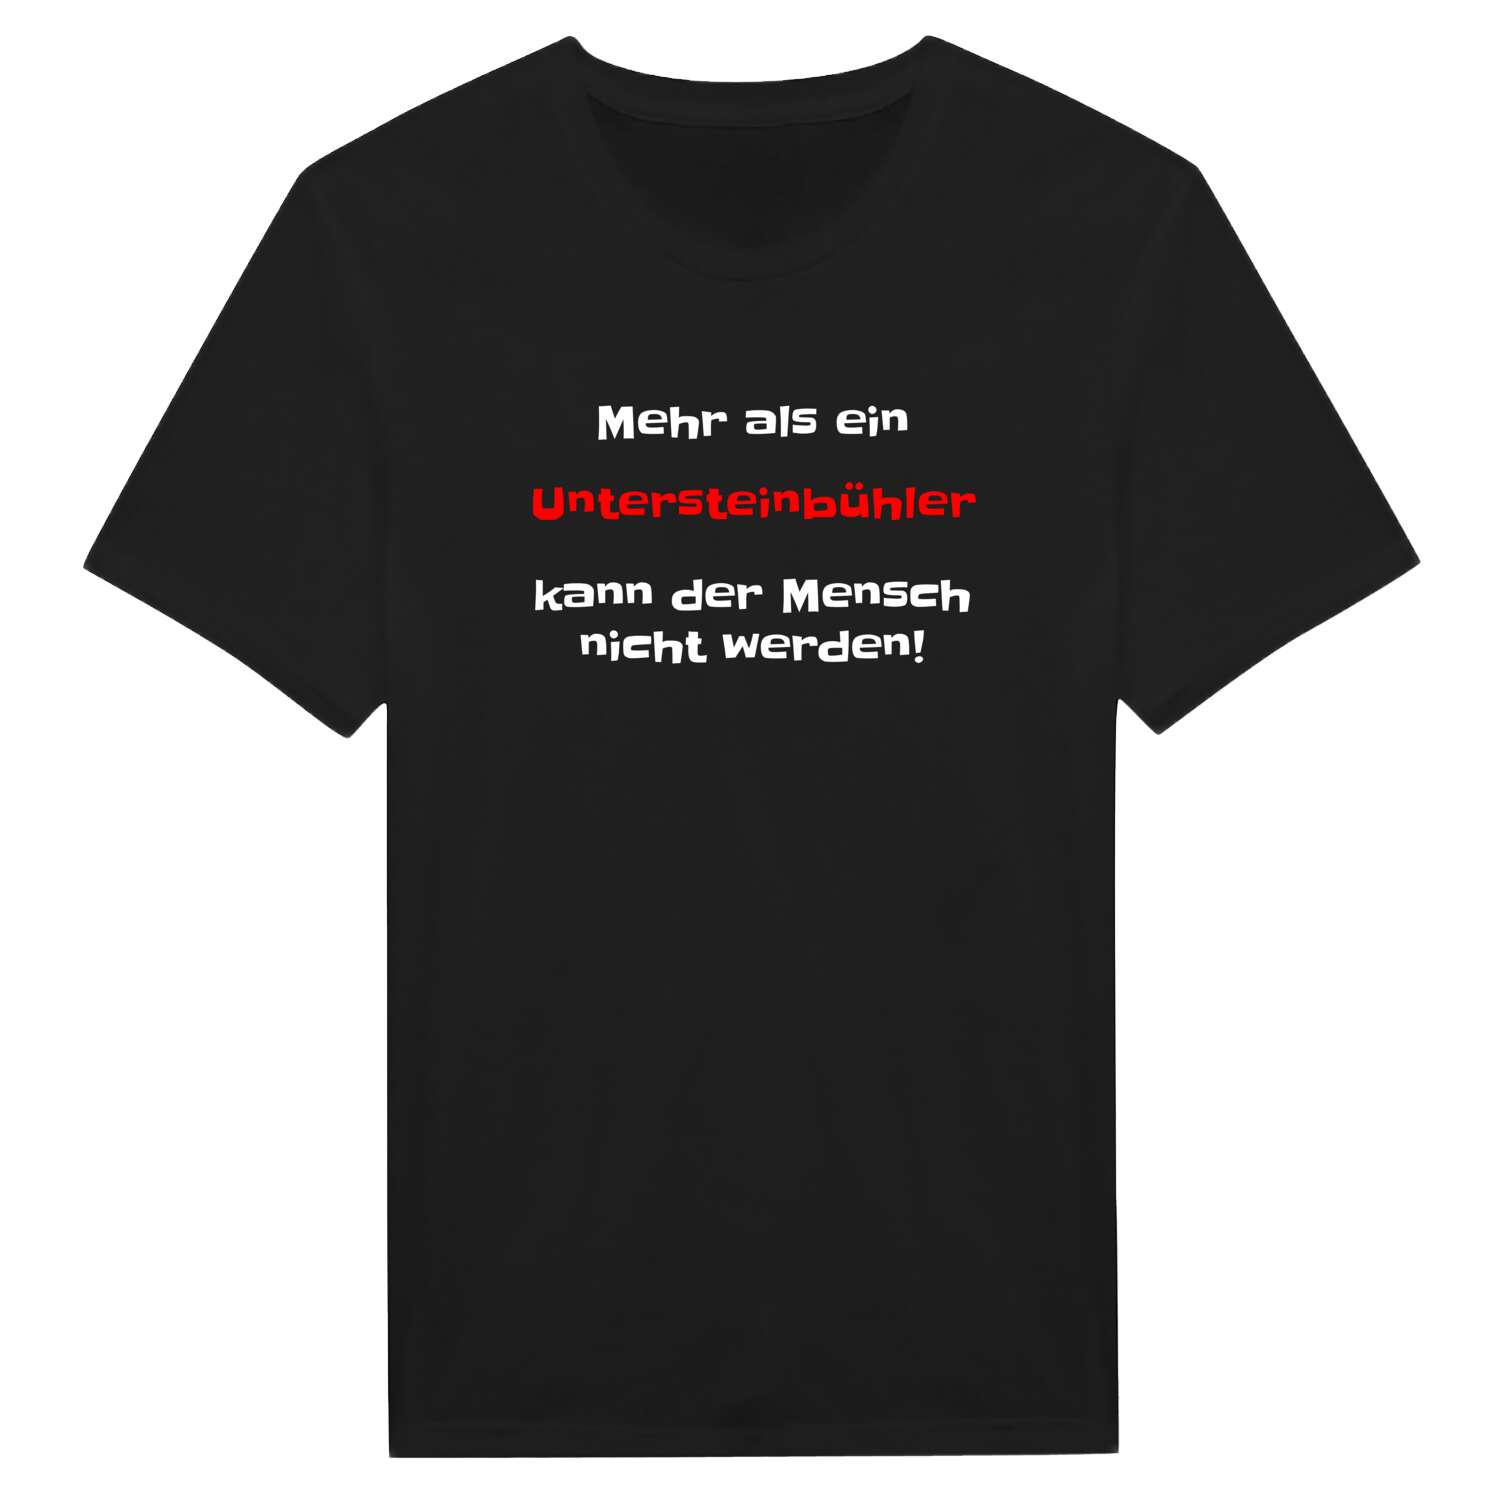 Untersteinbühl T-Shirt »Mehr als ein«